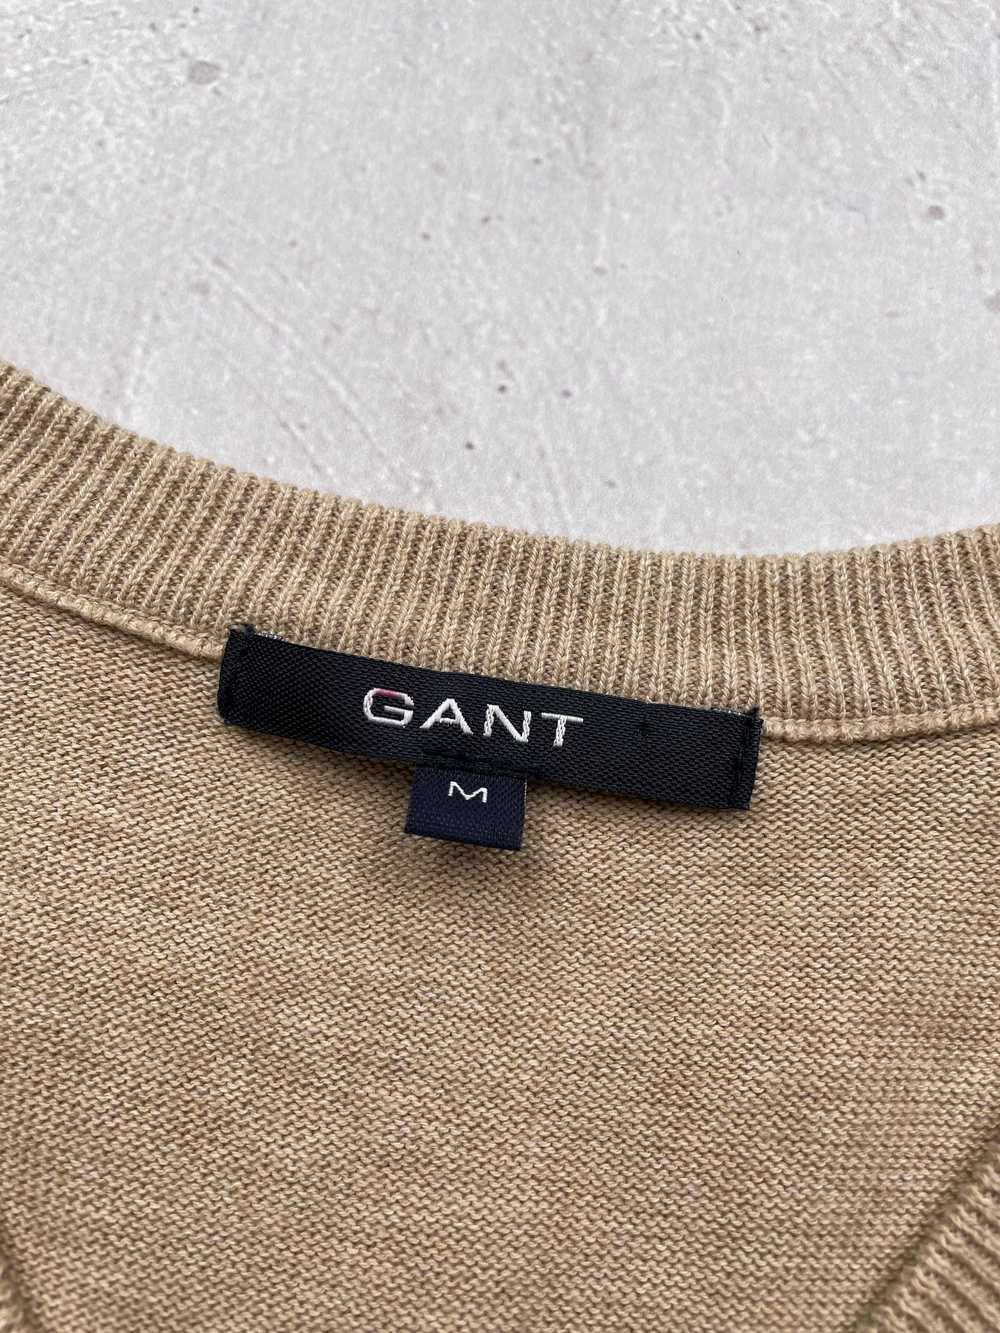 Gant × Streetwear × Vintage Gant Vintage Vest - image 5